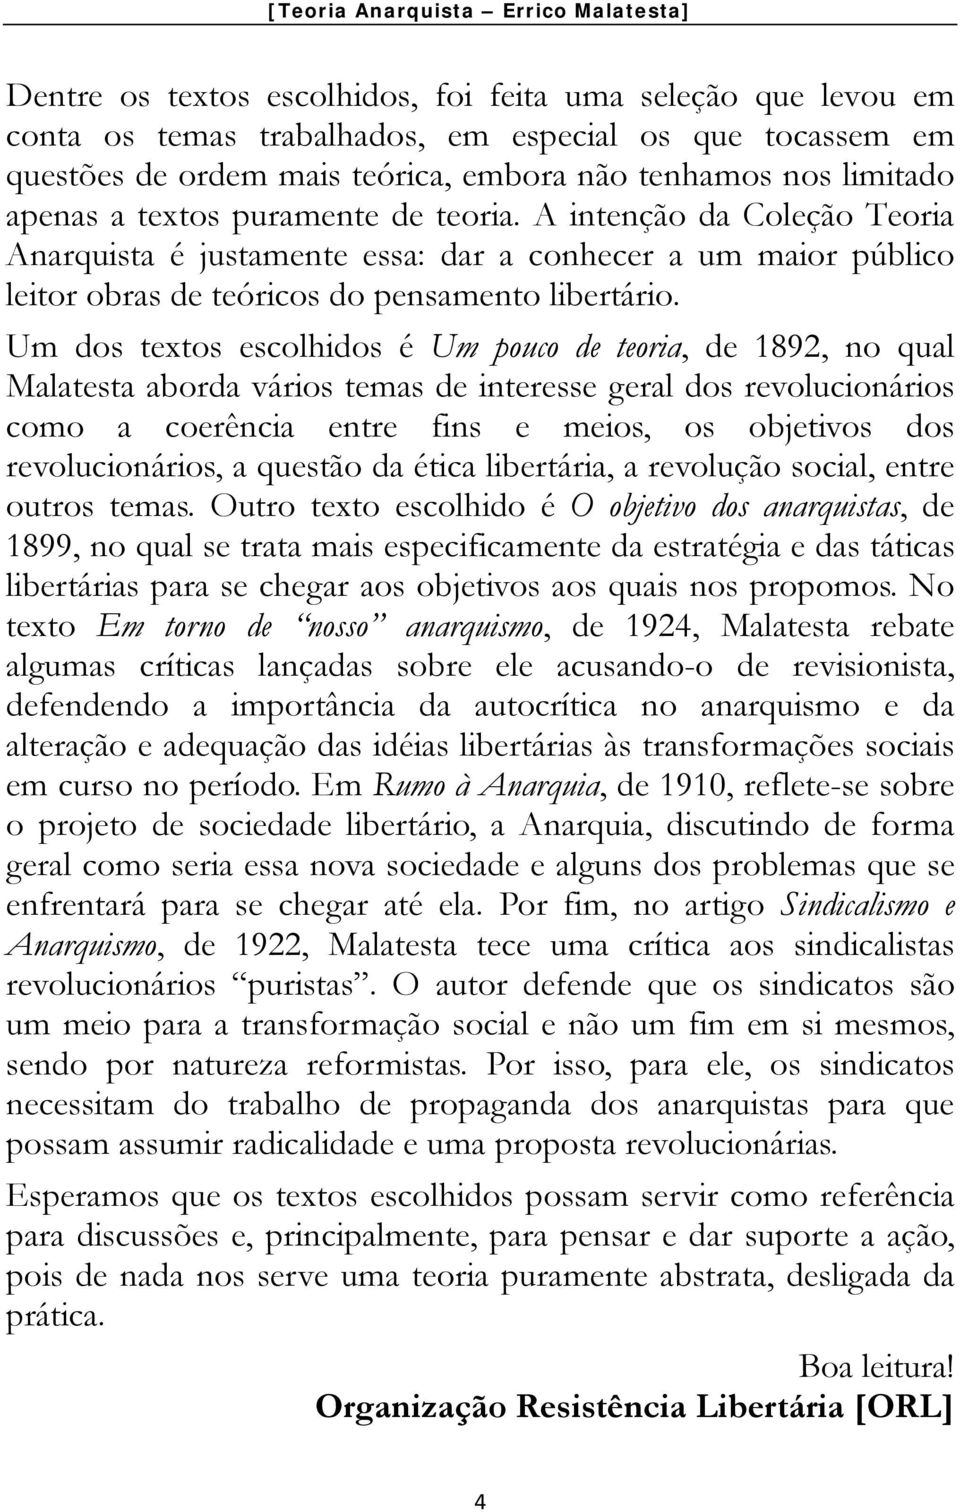 Um dos textos escolhidos é Um pouco de teoria, de 1892, no qual Malatesta aborda vários temas de interesse geral dos revolucionários como a coerência entre fins e meios, os objetivos dos